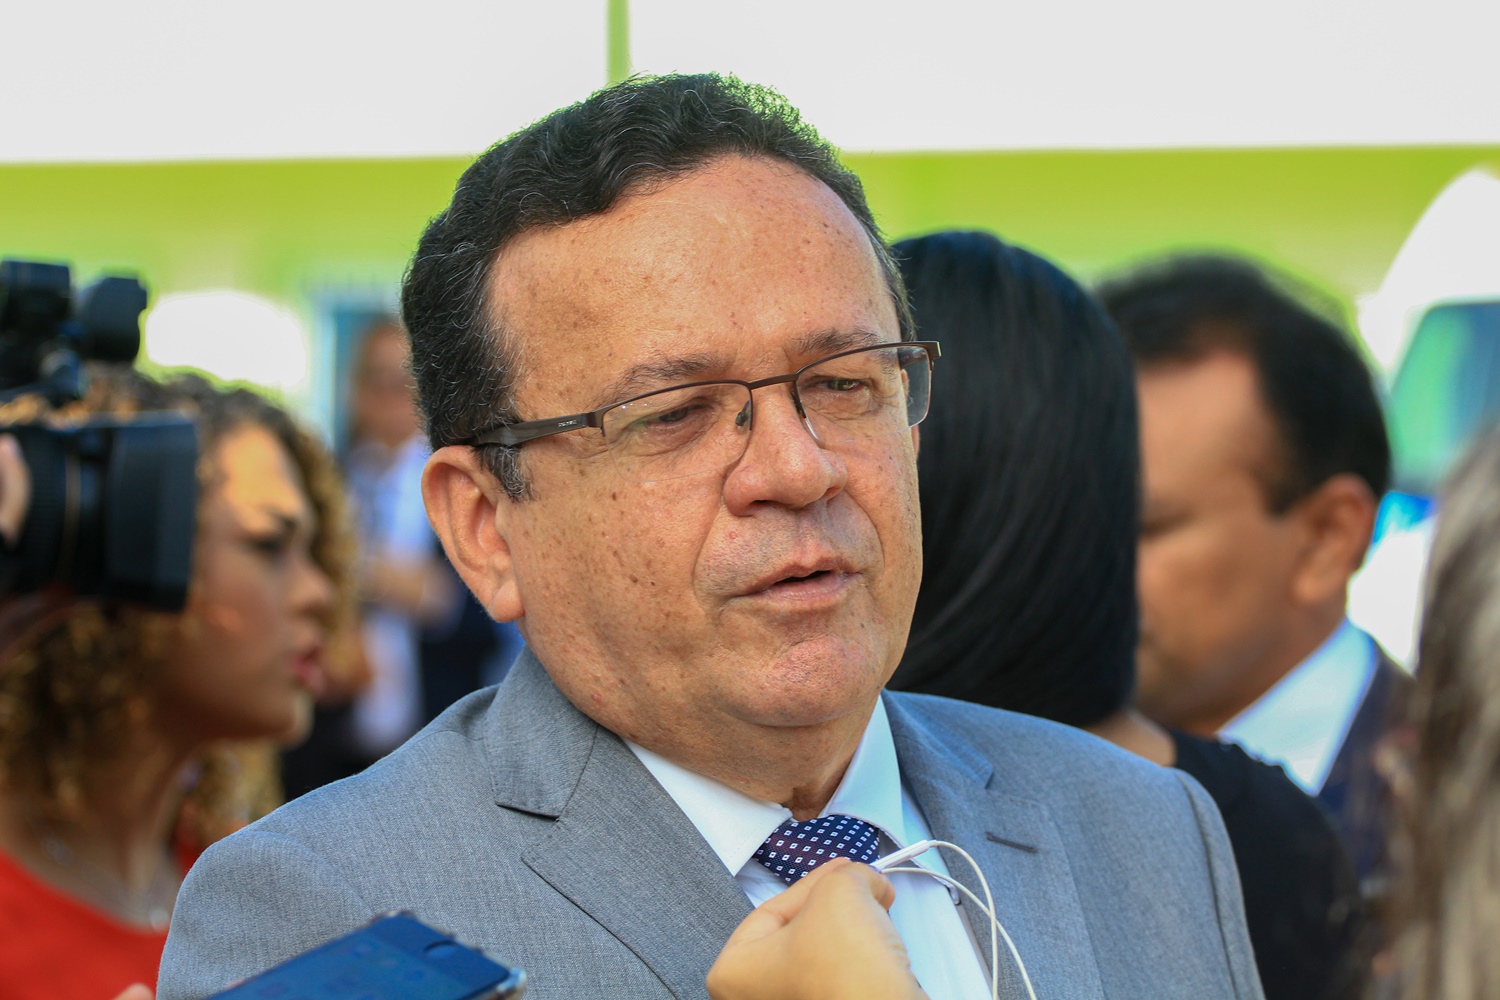 Sebastião Ribeiro Martins